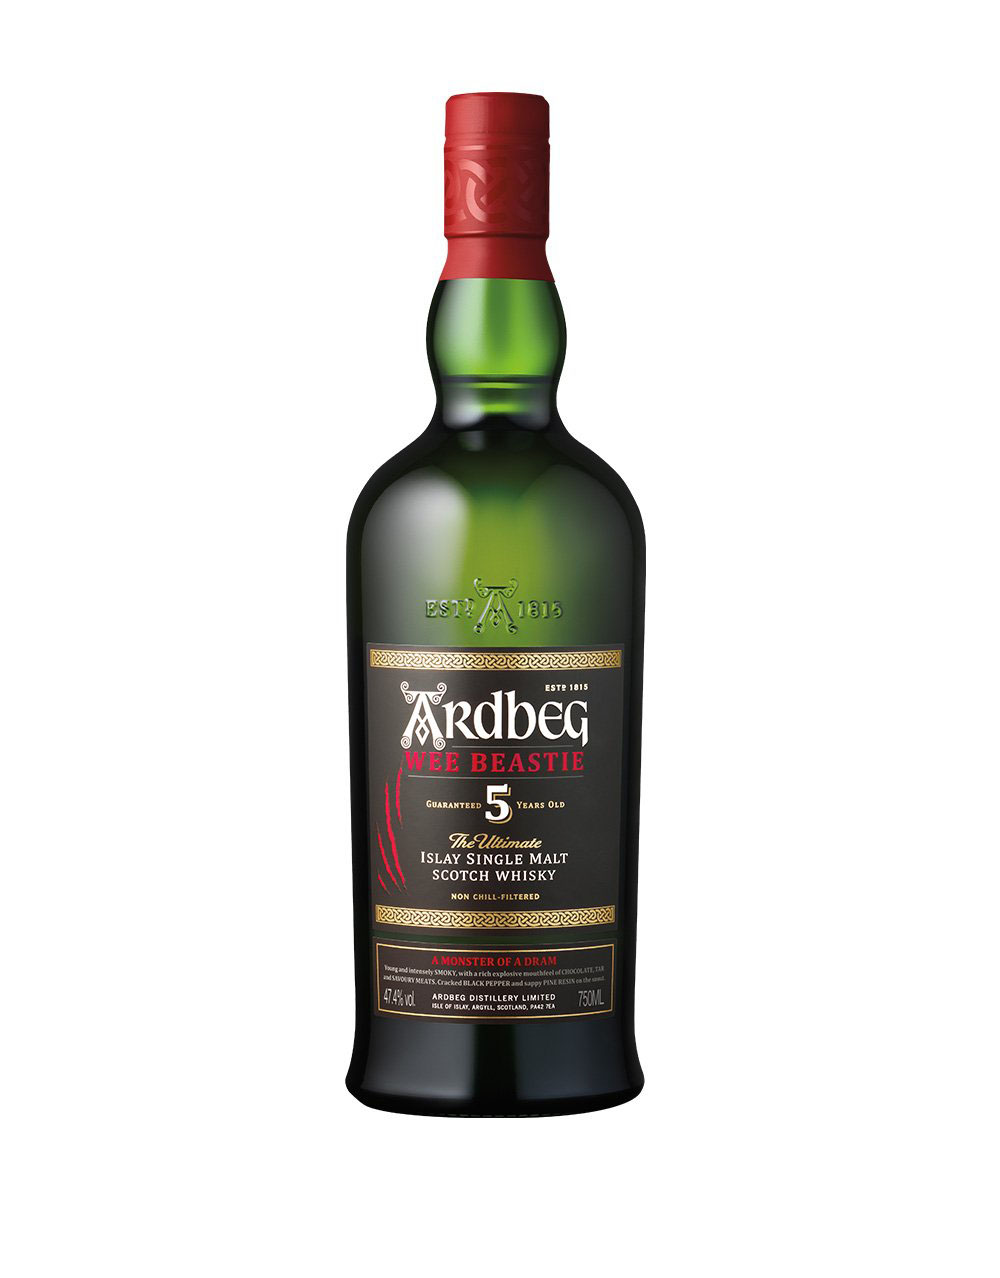 Tullibardine 20 Year Old Highland Single Malt Scotch Whisky